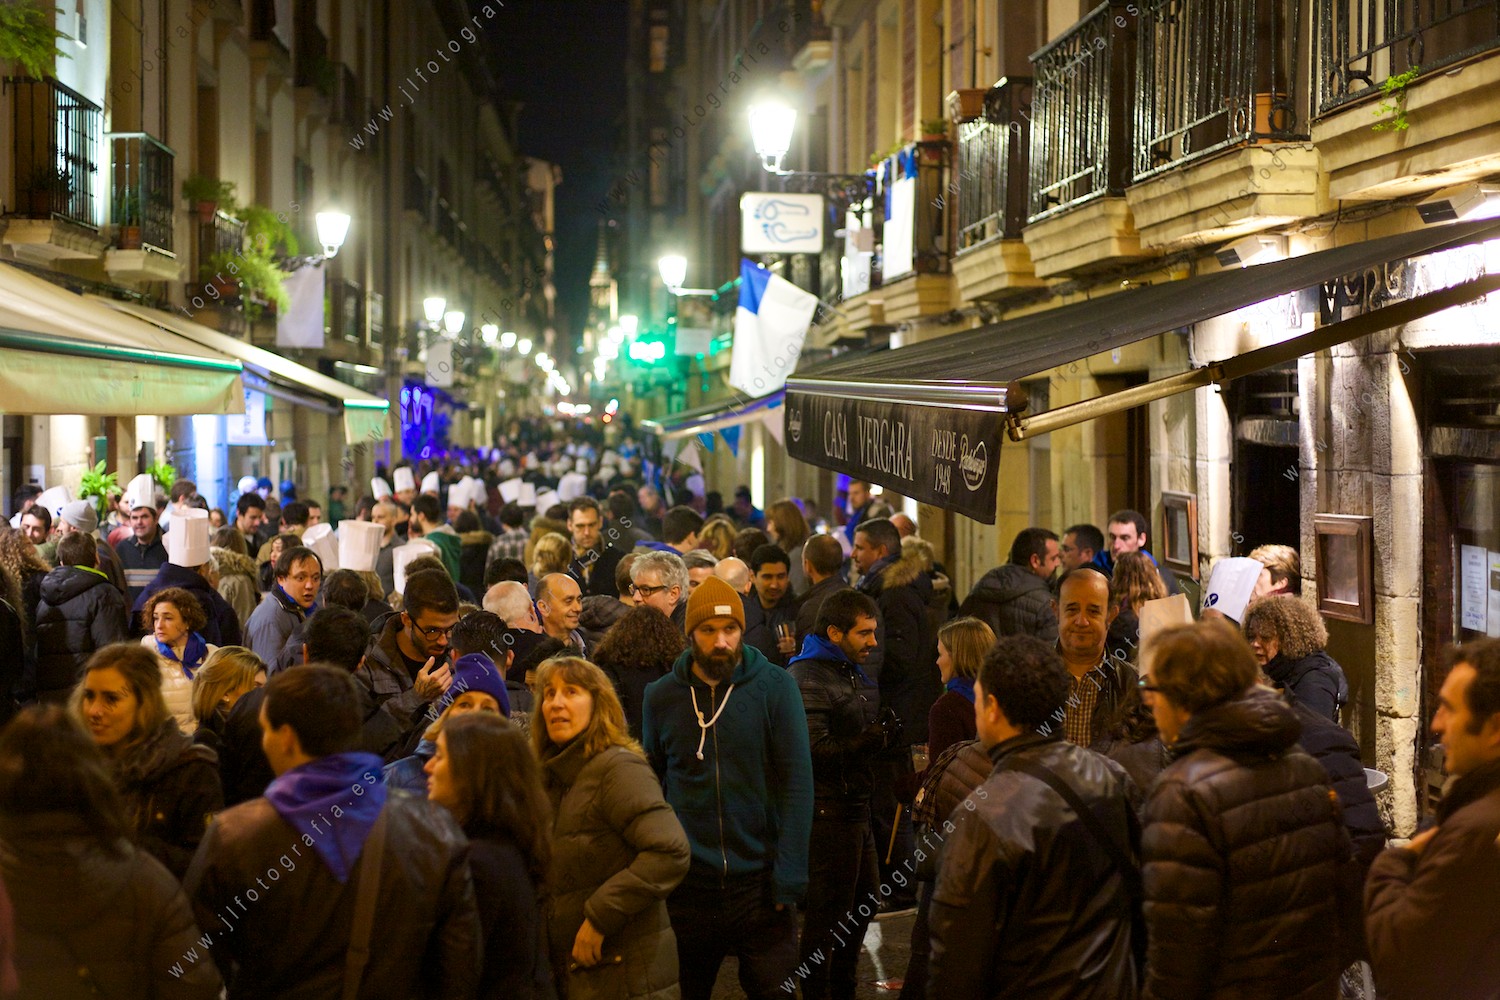 Donostia no duerme en la fiesta de la tamborrada de San Sebastián, todas las calles del casco viejo llenas.